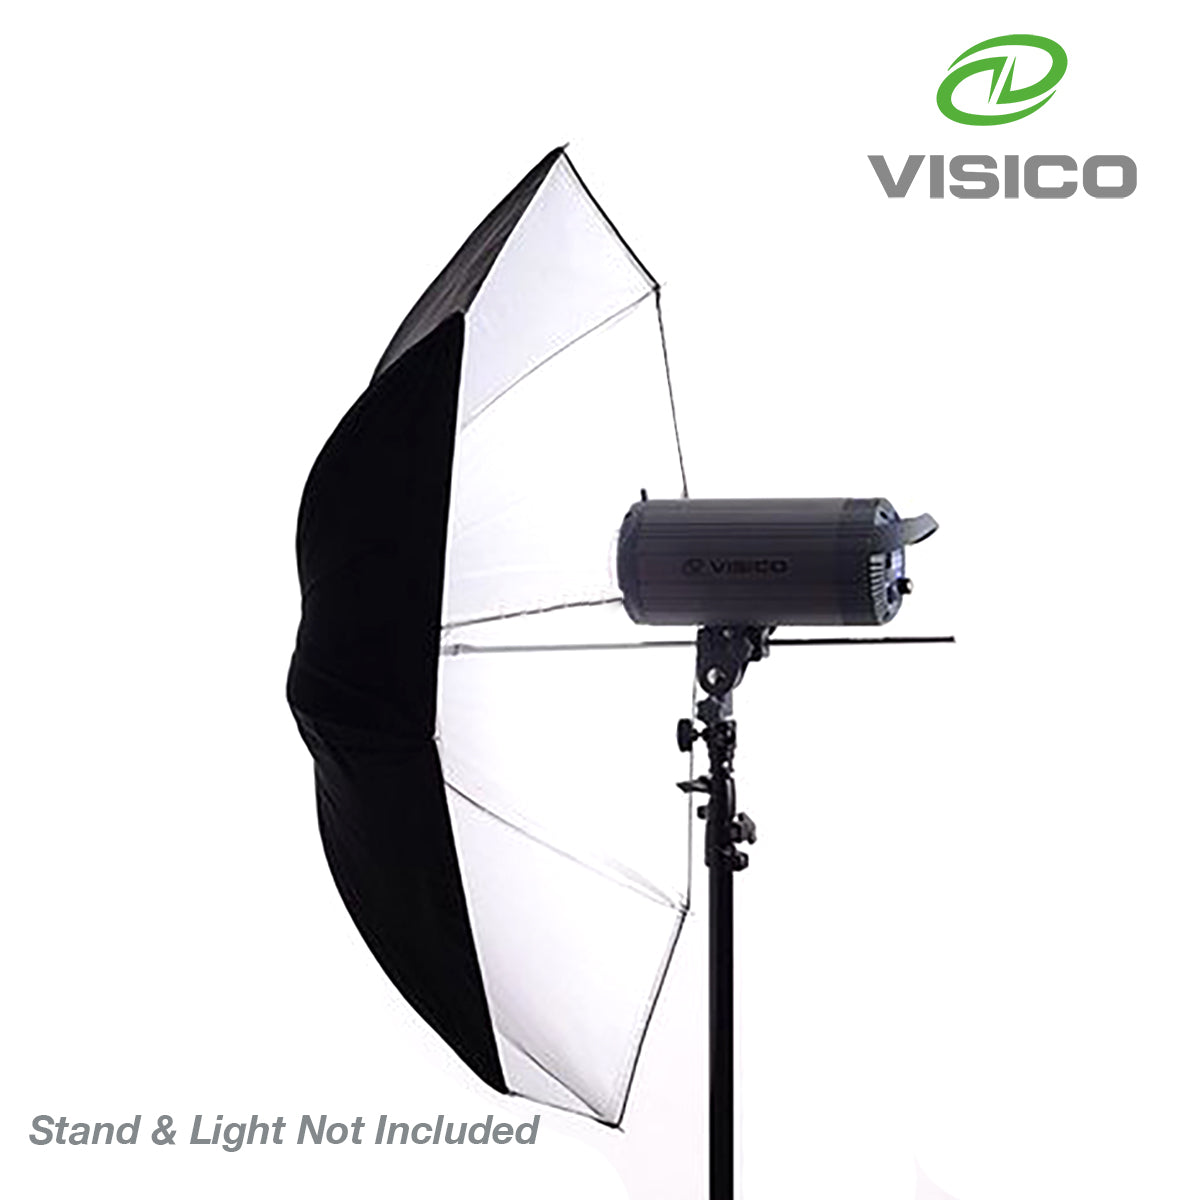 Visico 100cm PRO Photographic Umbrella Black/Silver/Translucent VSUB-007-100